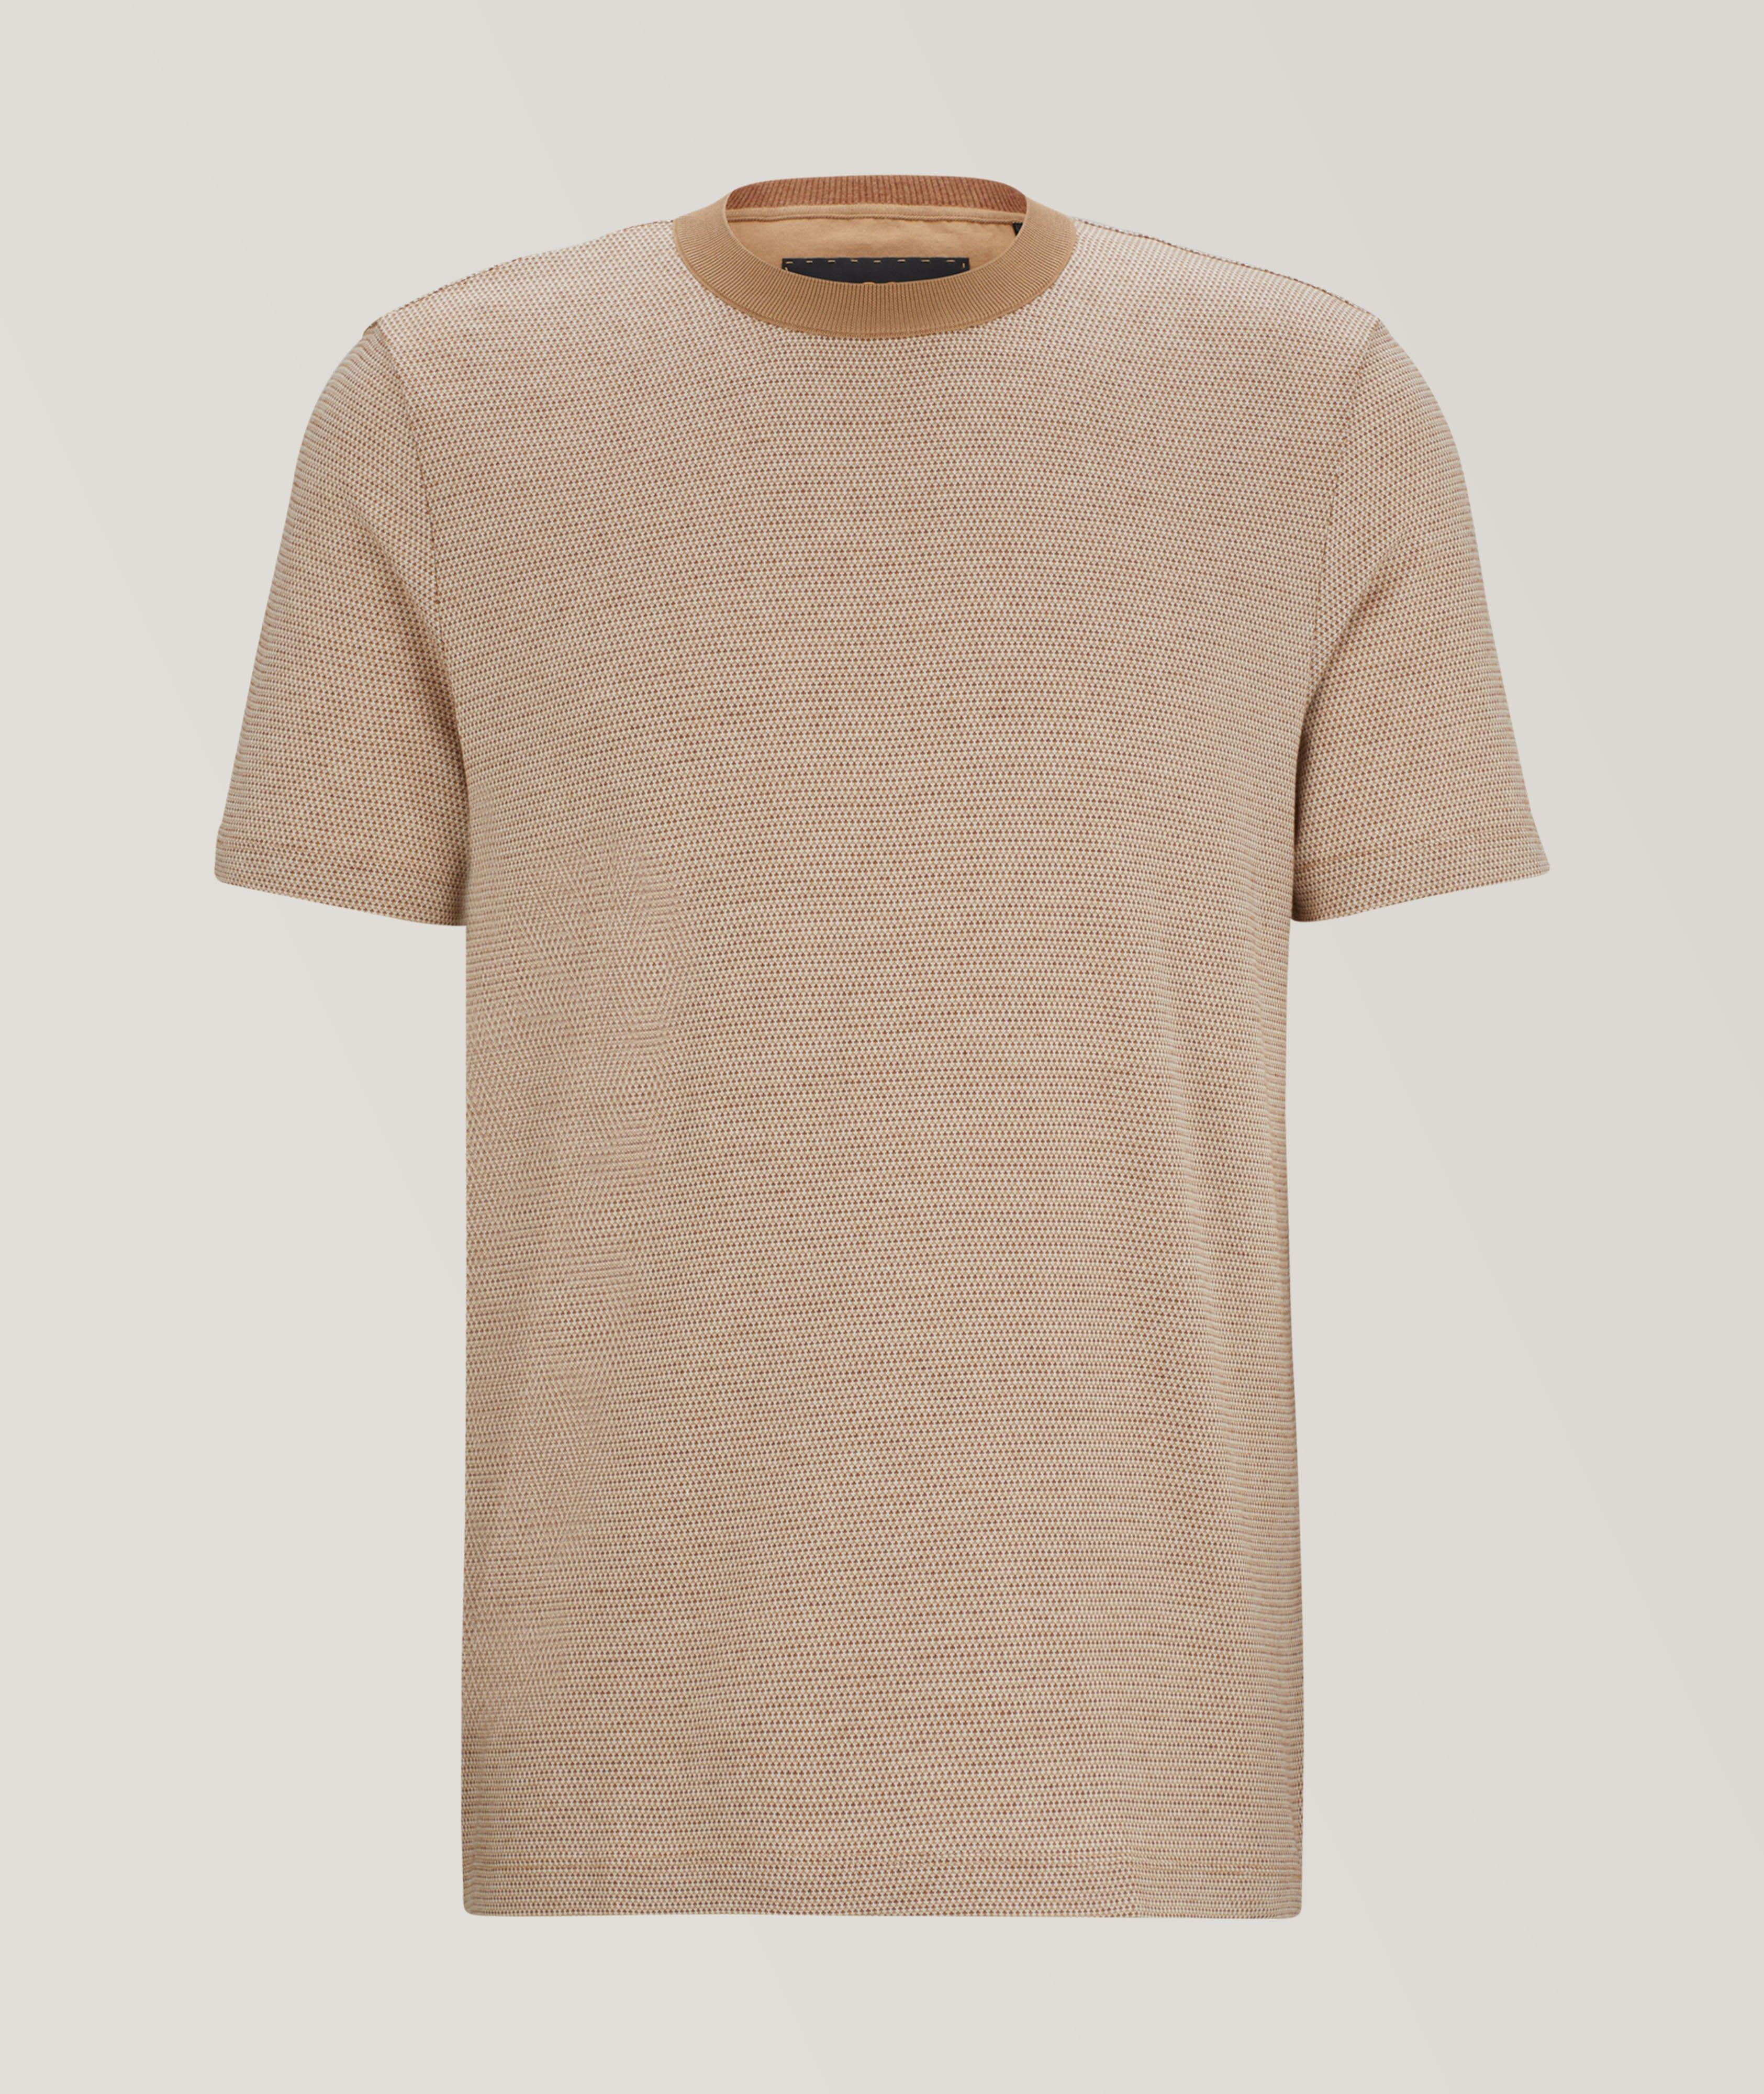 Bubble Structure Cotton-Cashmere T-Shirt image 0